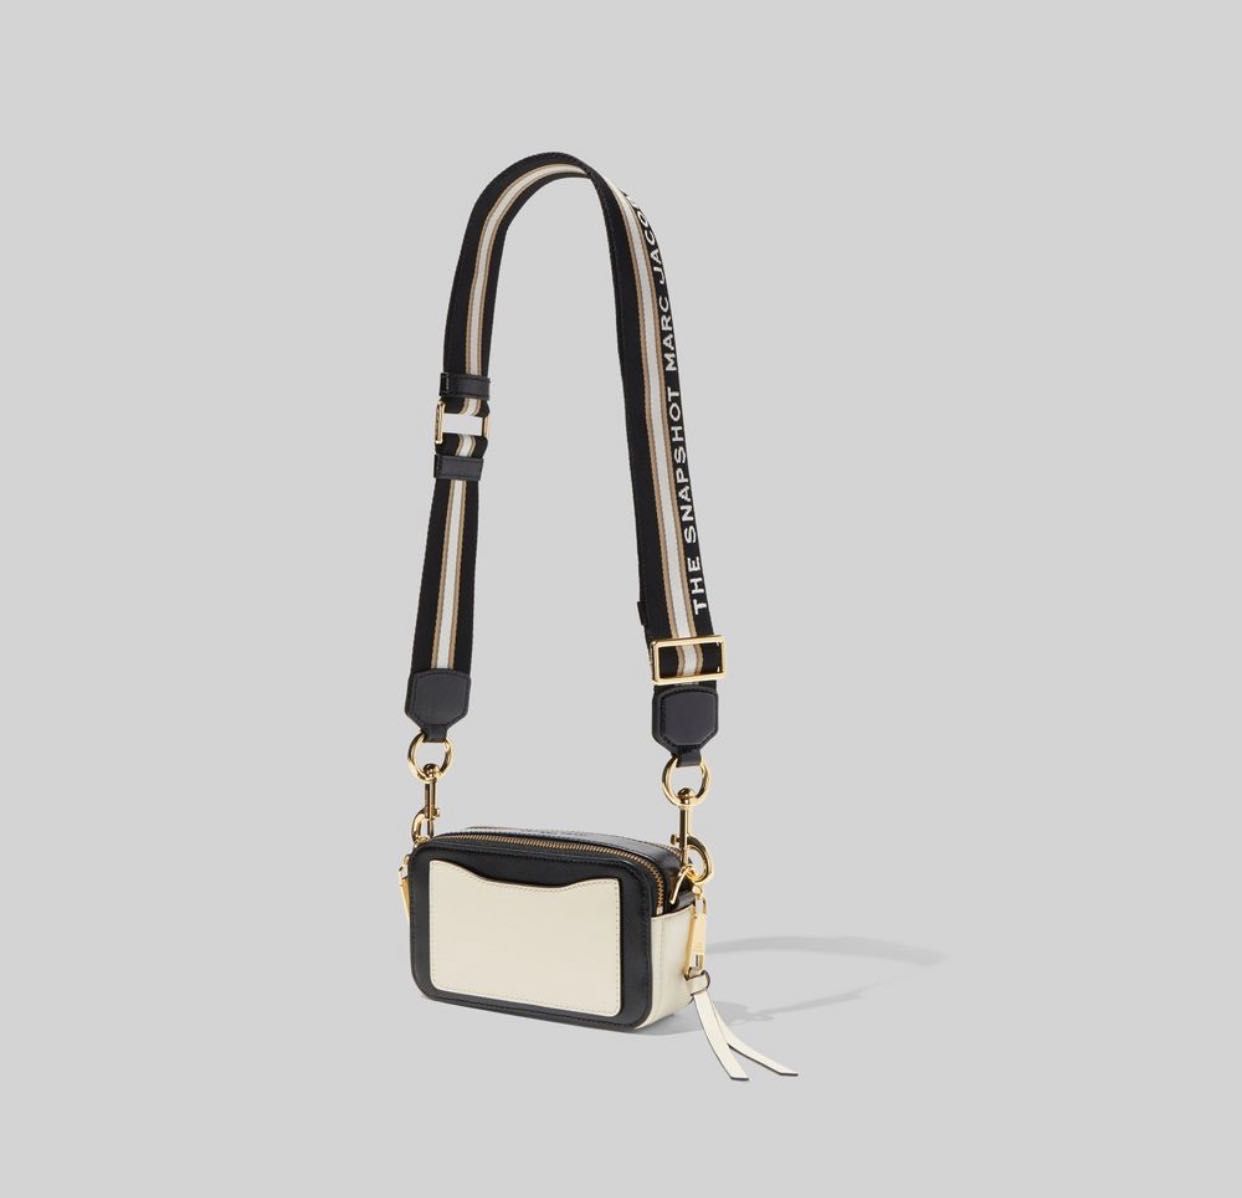 Кожаная женская сумка-клатч через плечо Marc Jacobs Snapshot